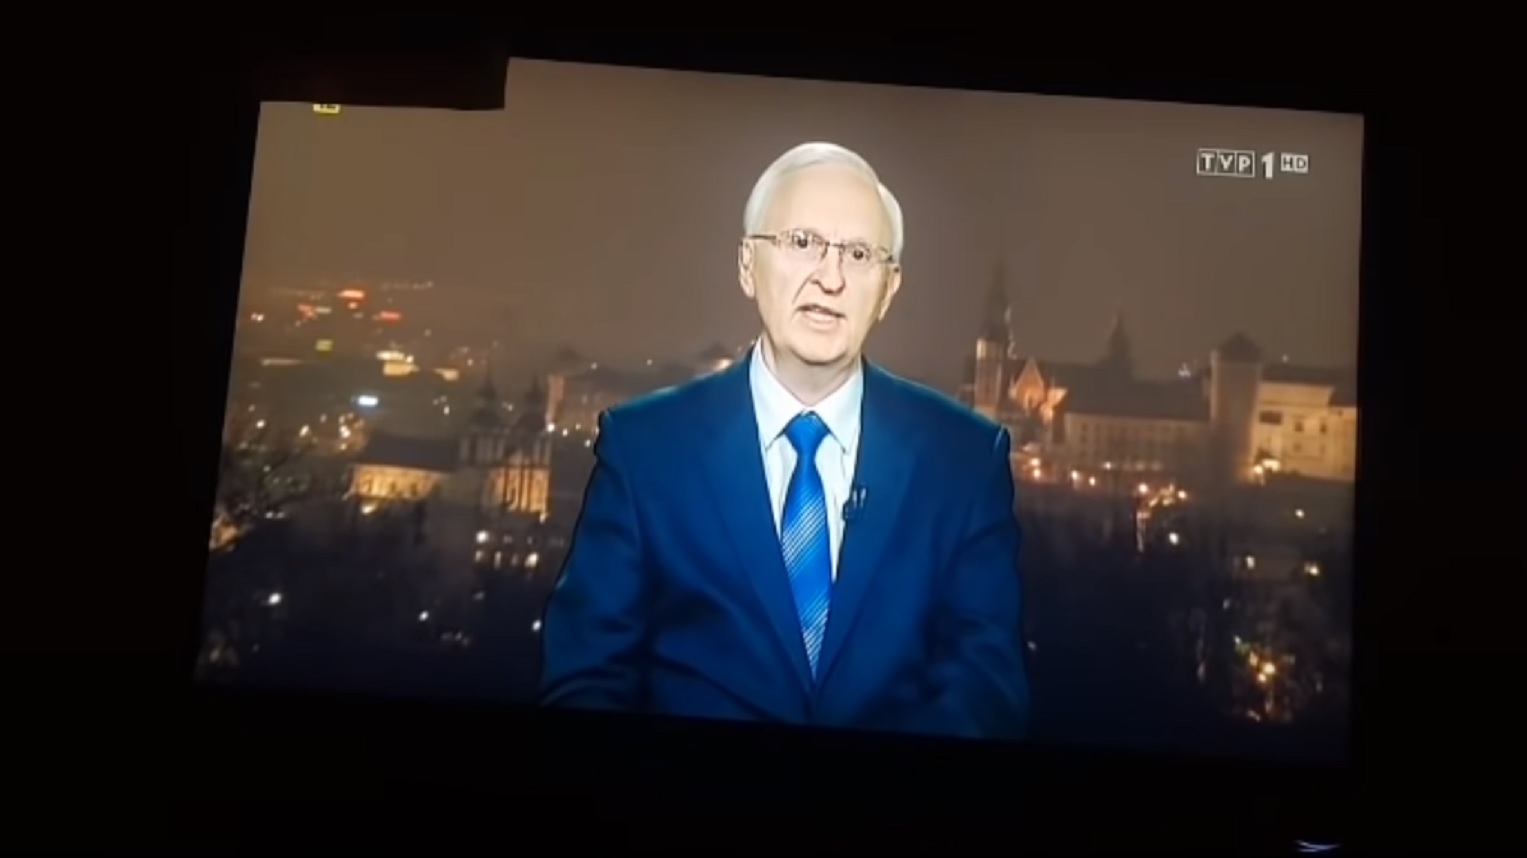 propolski.pl: [video] Wielka burza po programie TVP. Mówiono o lockdownie, szczepionkach i Wielkim Resecie. Oto cały program